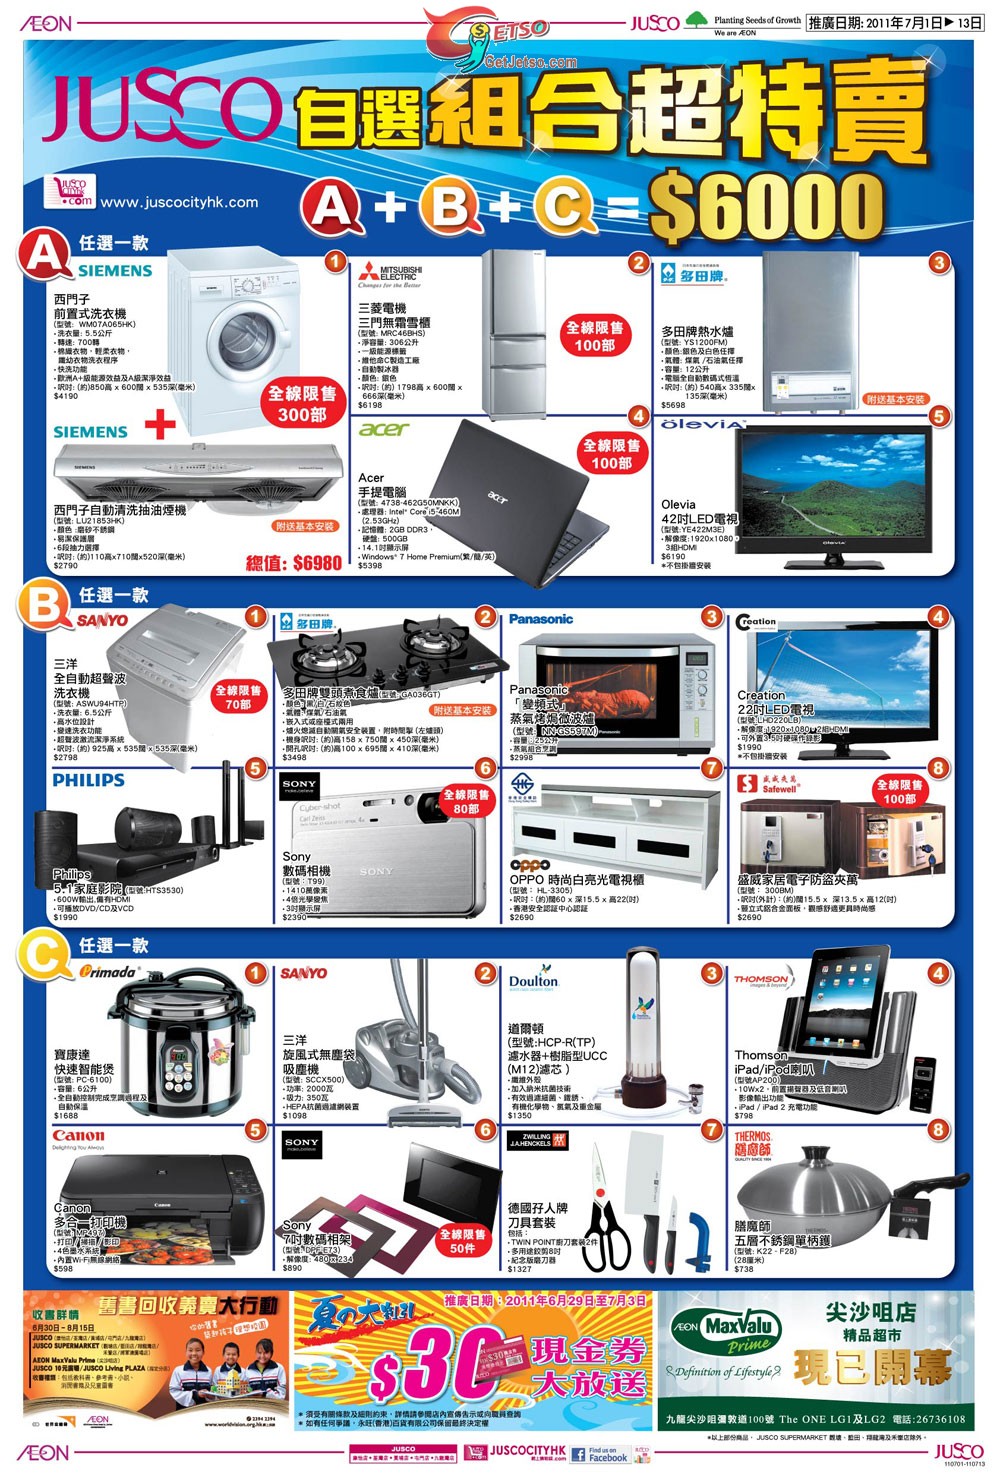 吉之島暑假電腦用品展及家電組合超特賣優惠(11年7月1-13日)圖片1